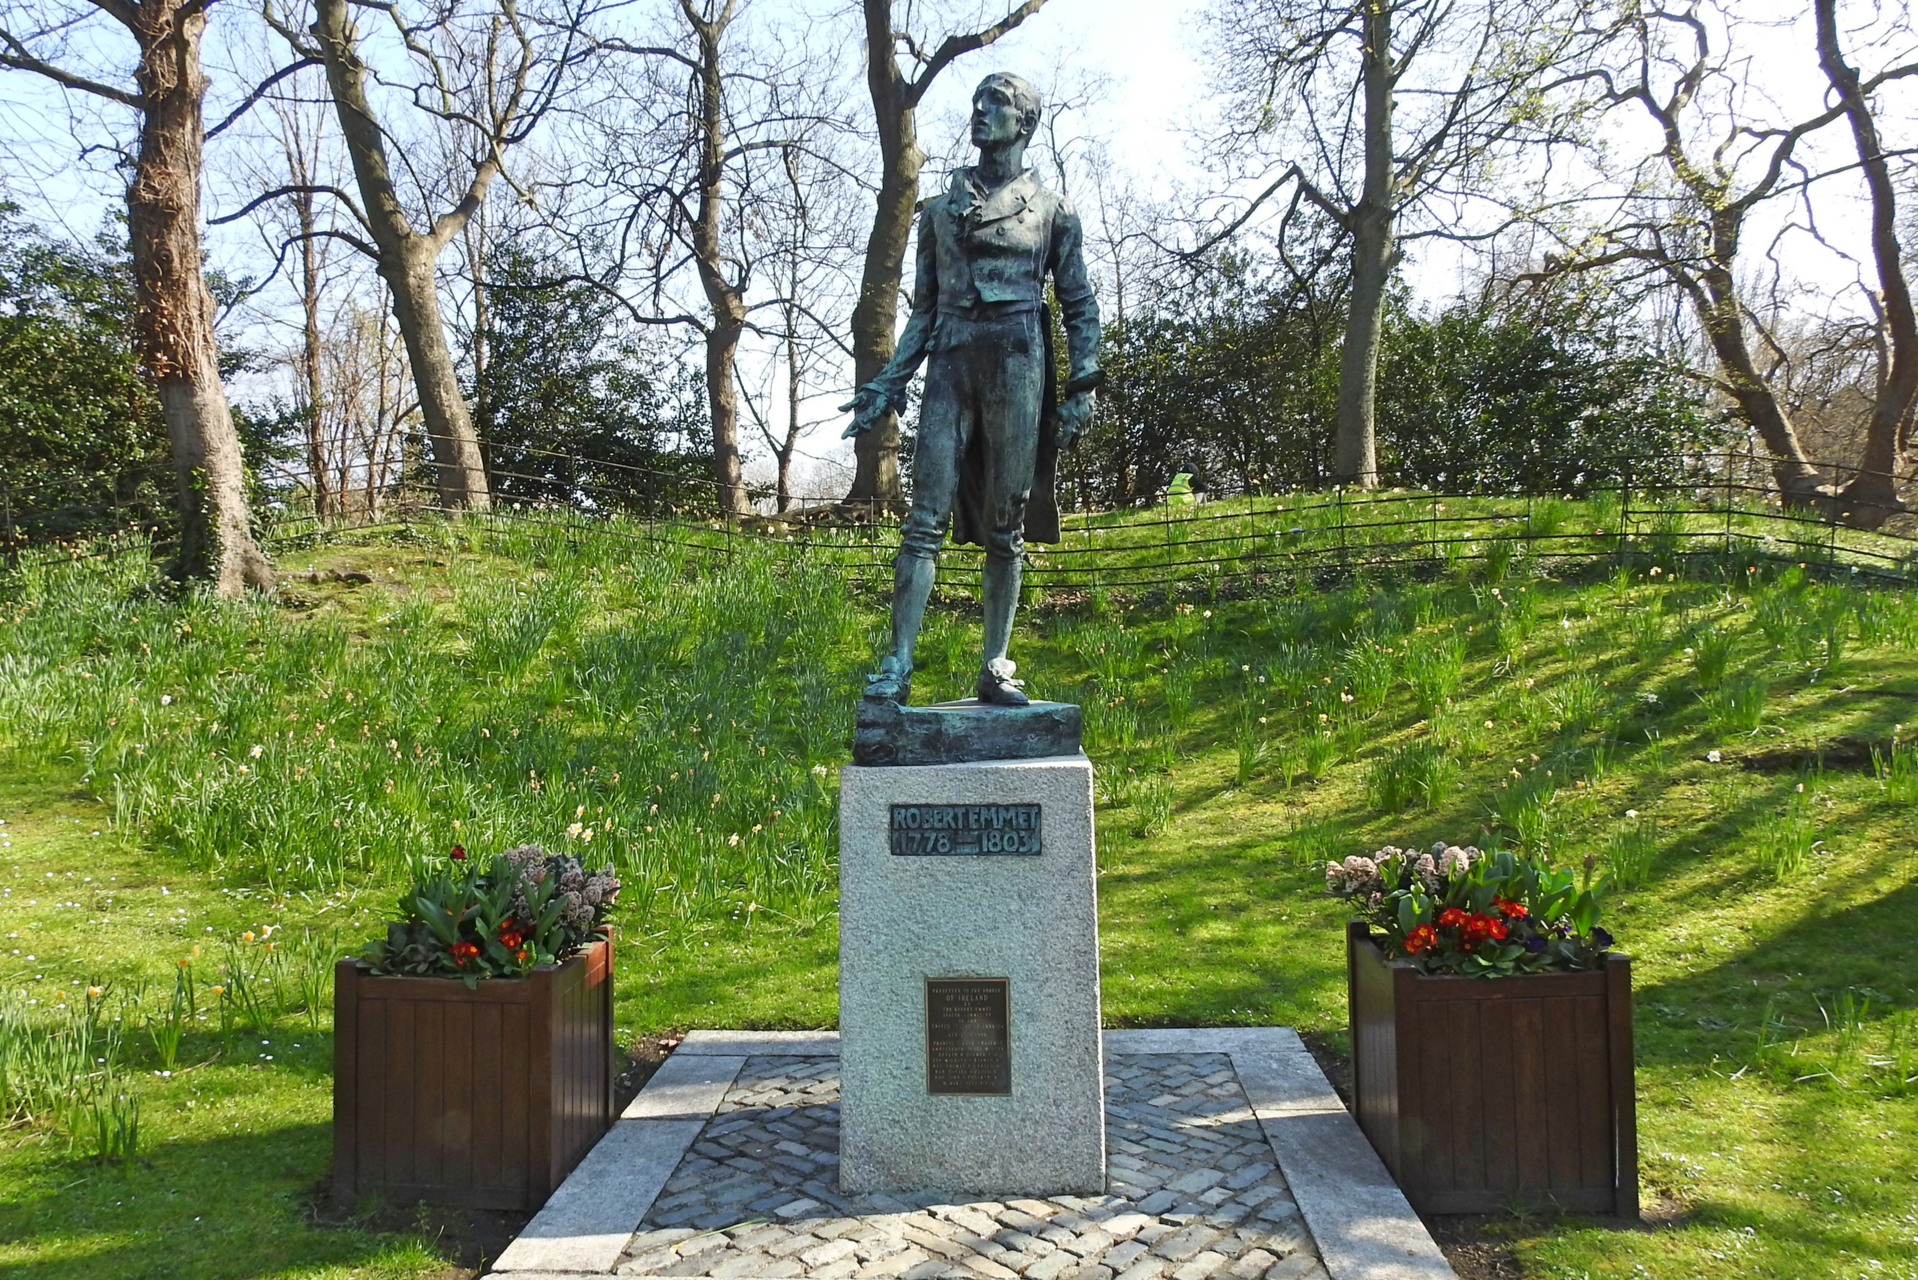 Statue of Robert Emmet in St. Stephen's Green